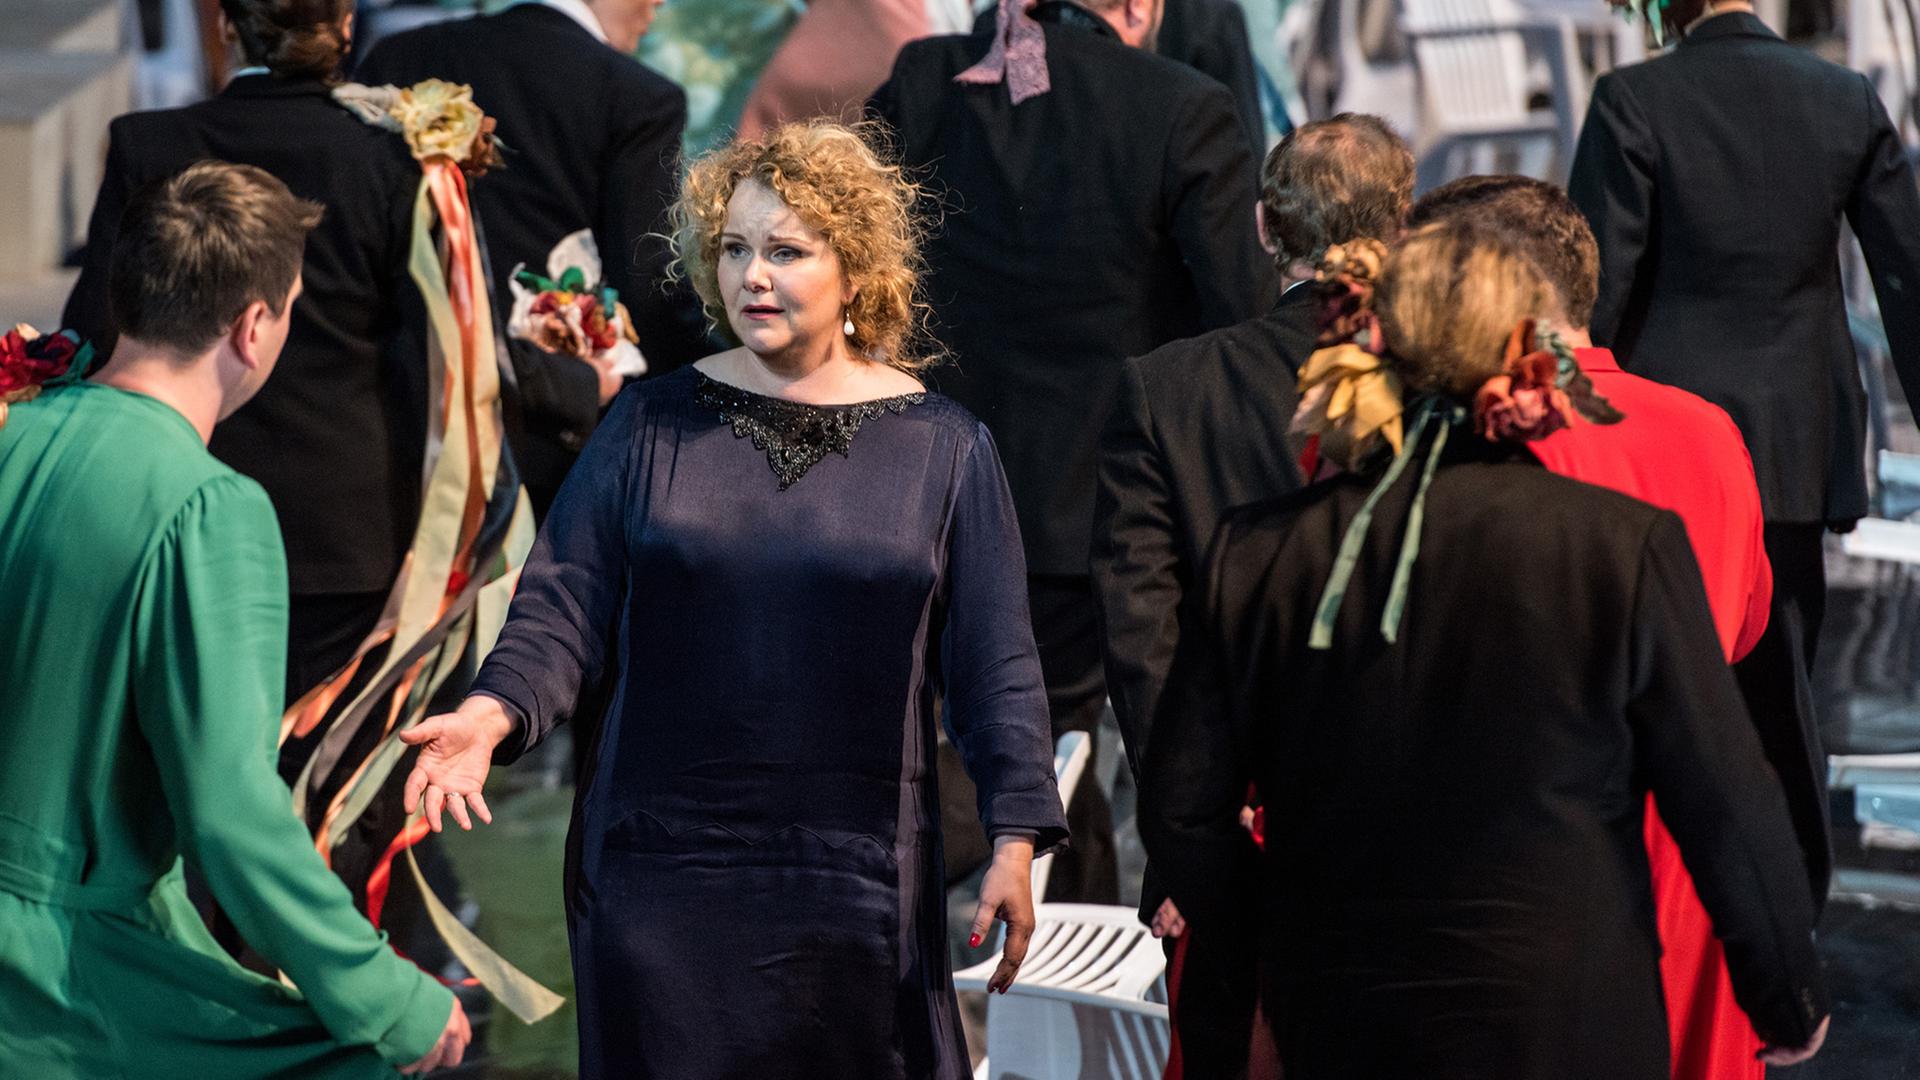 Brigitte Christensen als Königin Alceste und der MusicAeterna Chor in der Jahrhunderthalle während der Generalprobe der Barockoper "Alceste" von Christoph Willibald Gluck